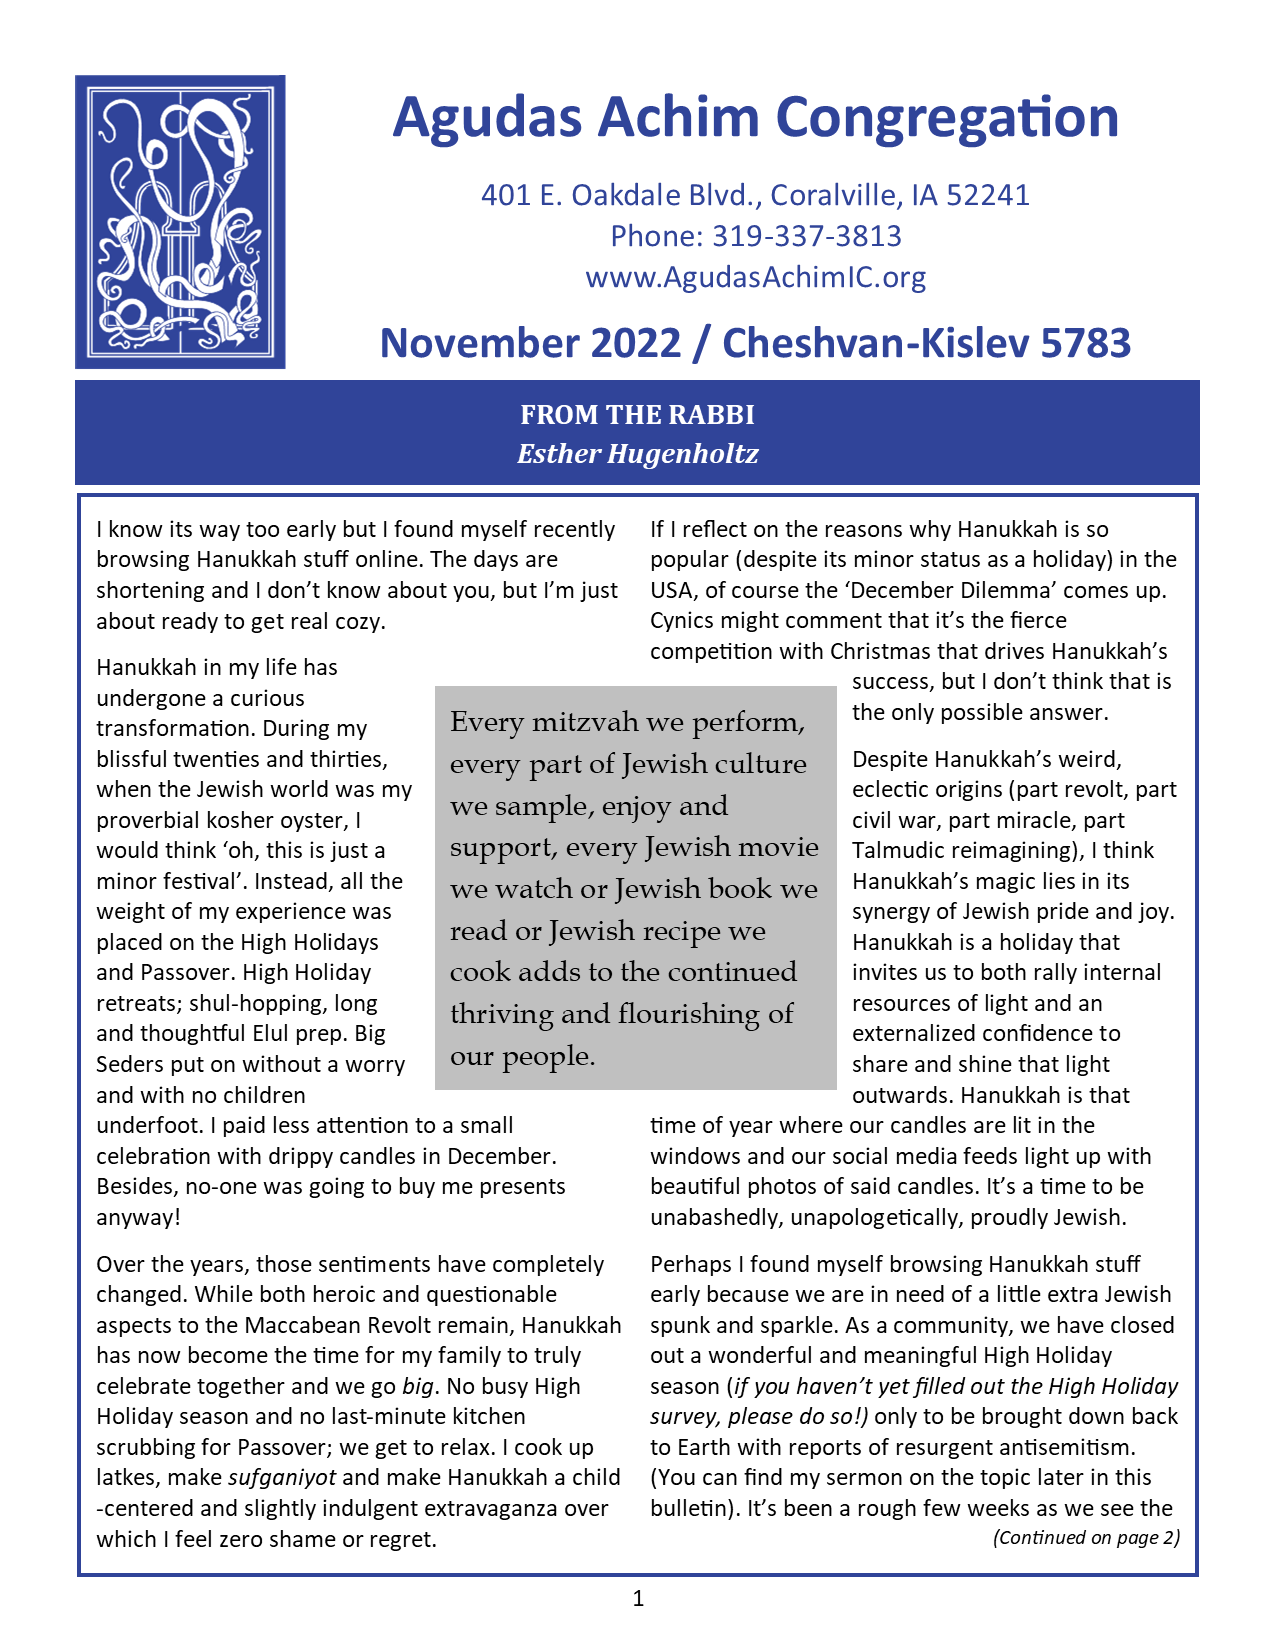 November 2022 Bulletin